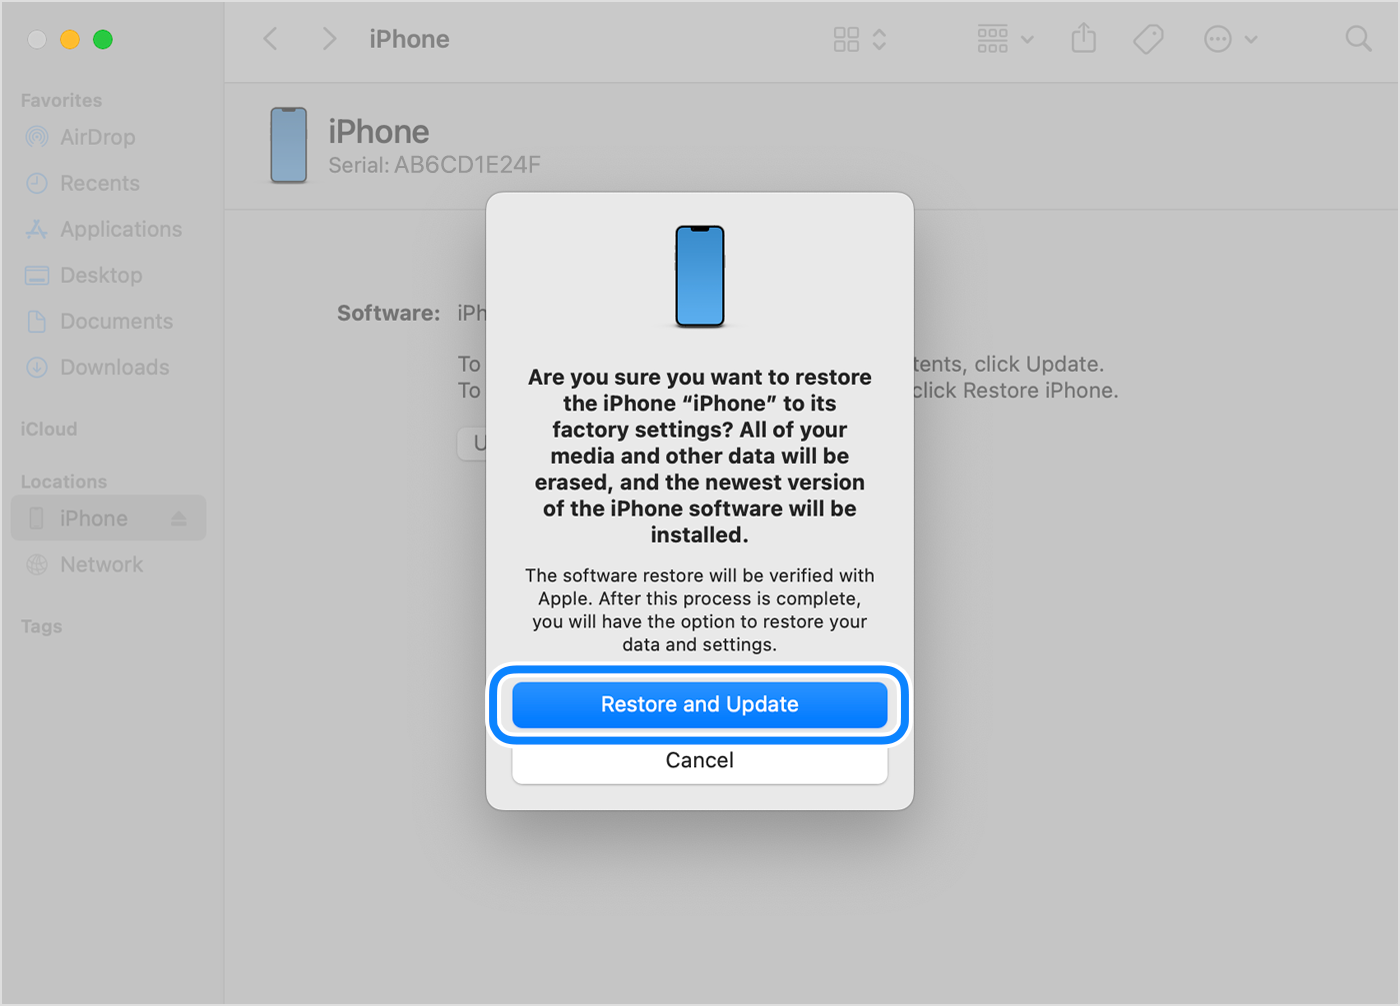 За да възстановите и актуализирате iPhone през компютъра си, трябва да докоснете Restore and Update (Възстановяване и актуализиране), за да потвърдите.